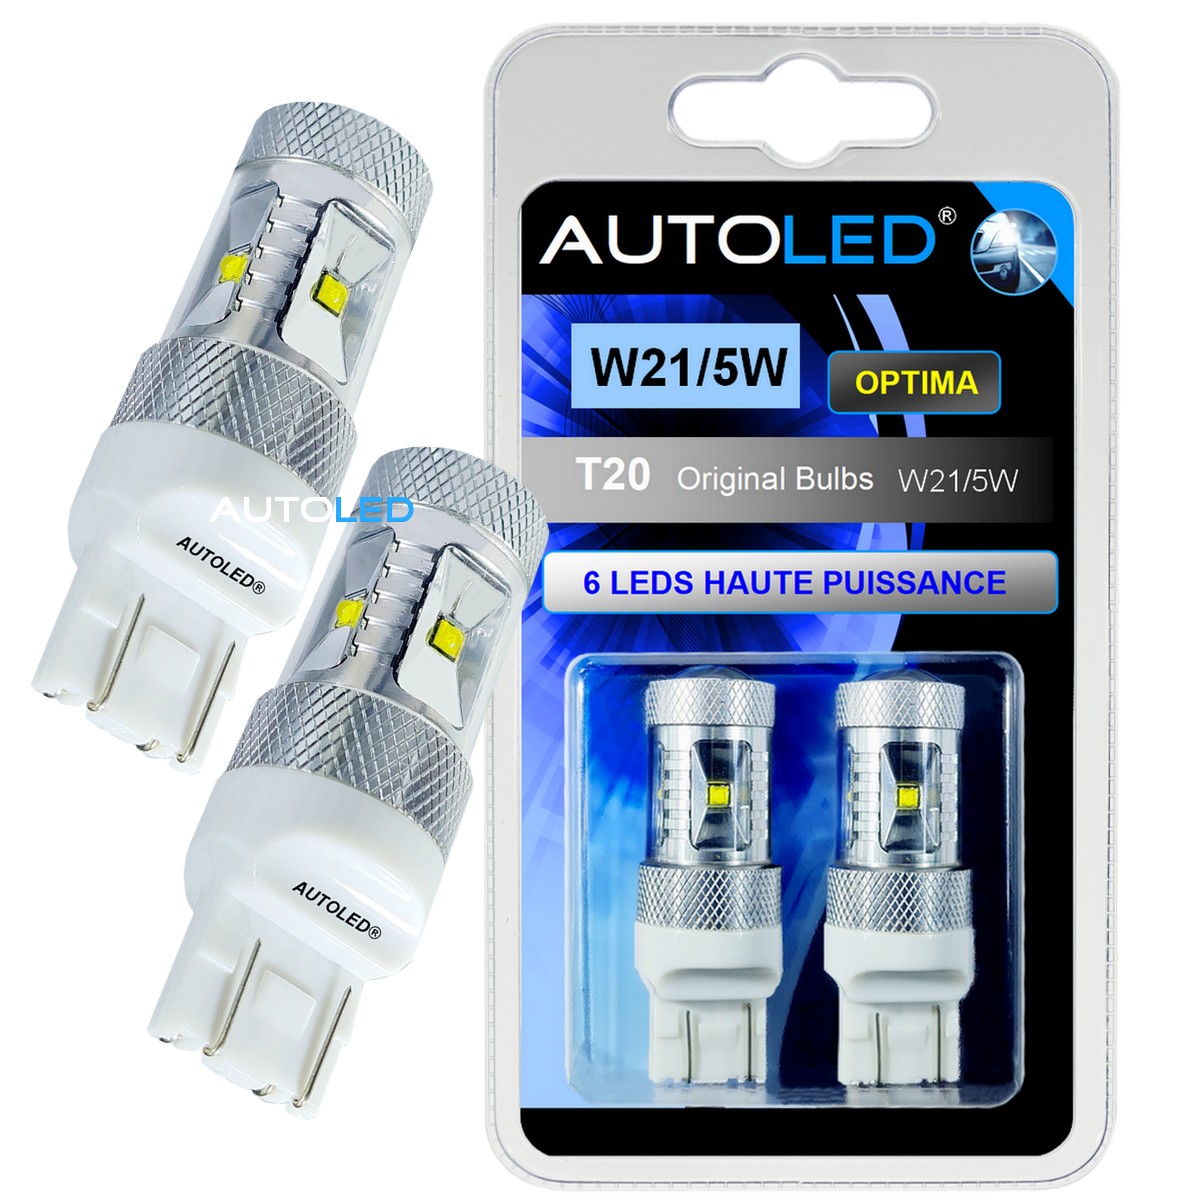 Lot de 2 Ampoules LED Titan® T20 7443 W21/5W pour feux diurne pour